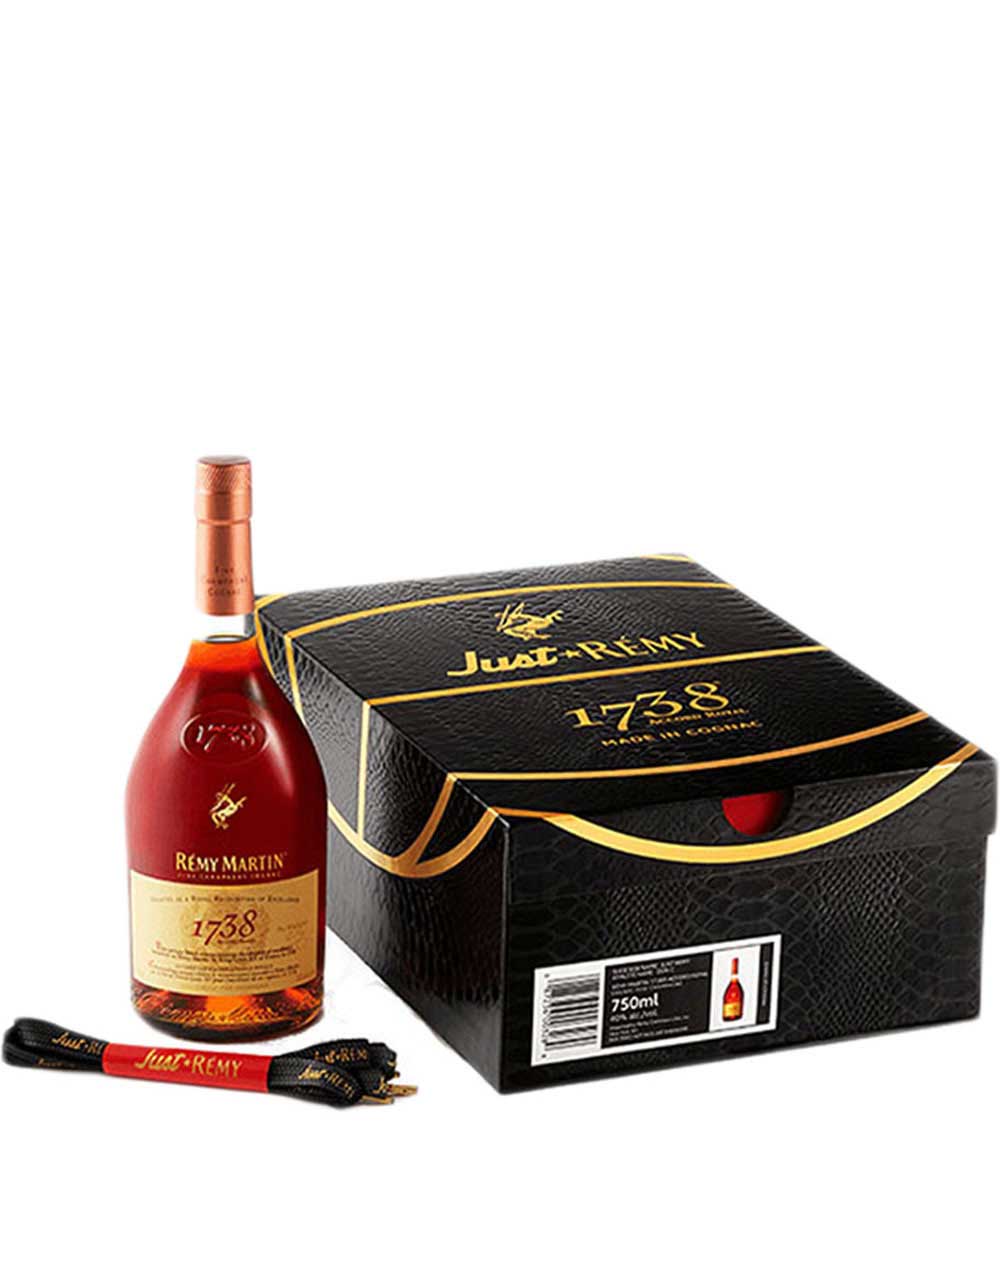 Guillon-Painturaud Hors d'Age Grande Champagne Cognac